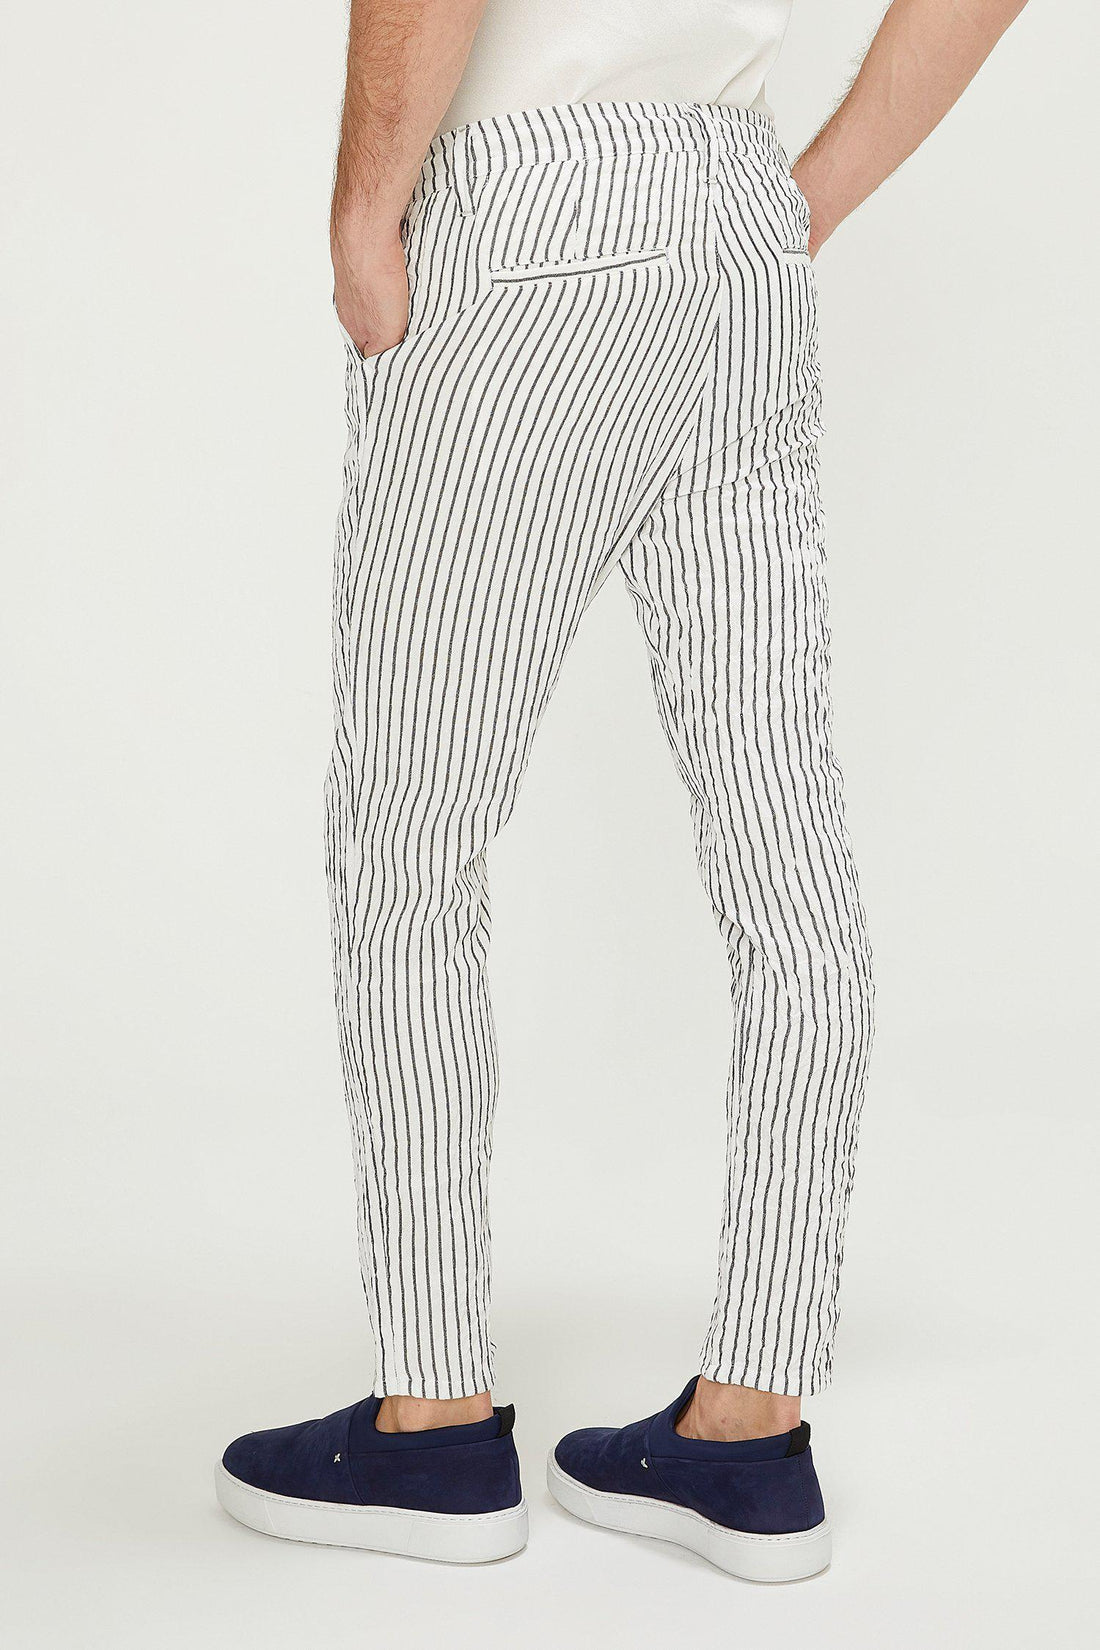 Striped Pants - White Black - Ron Tomson